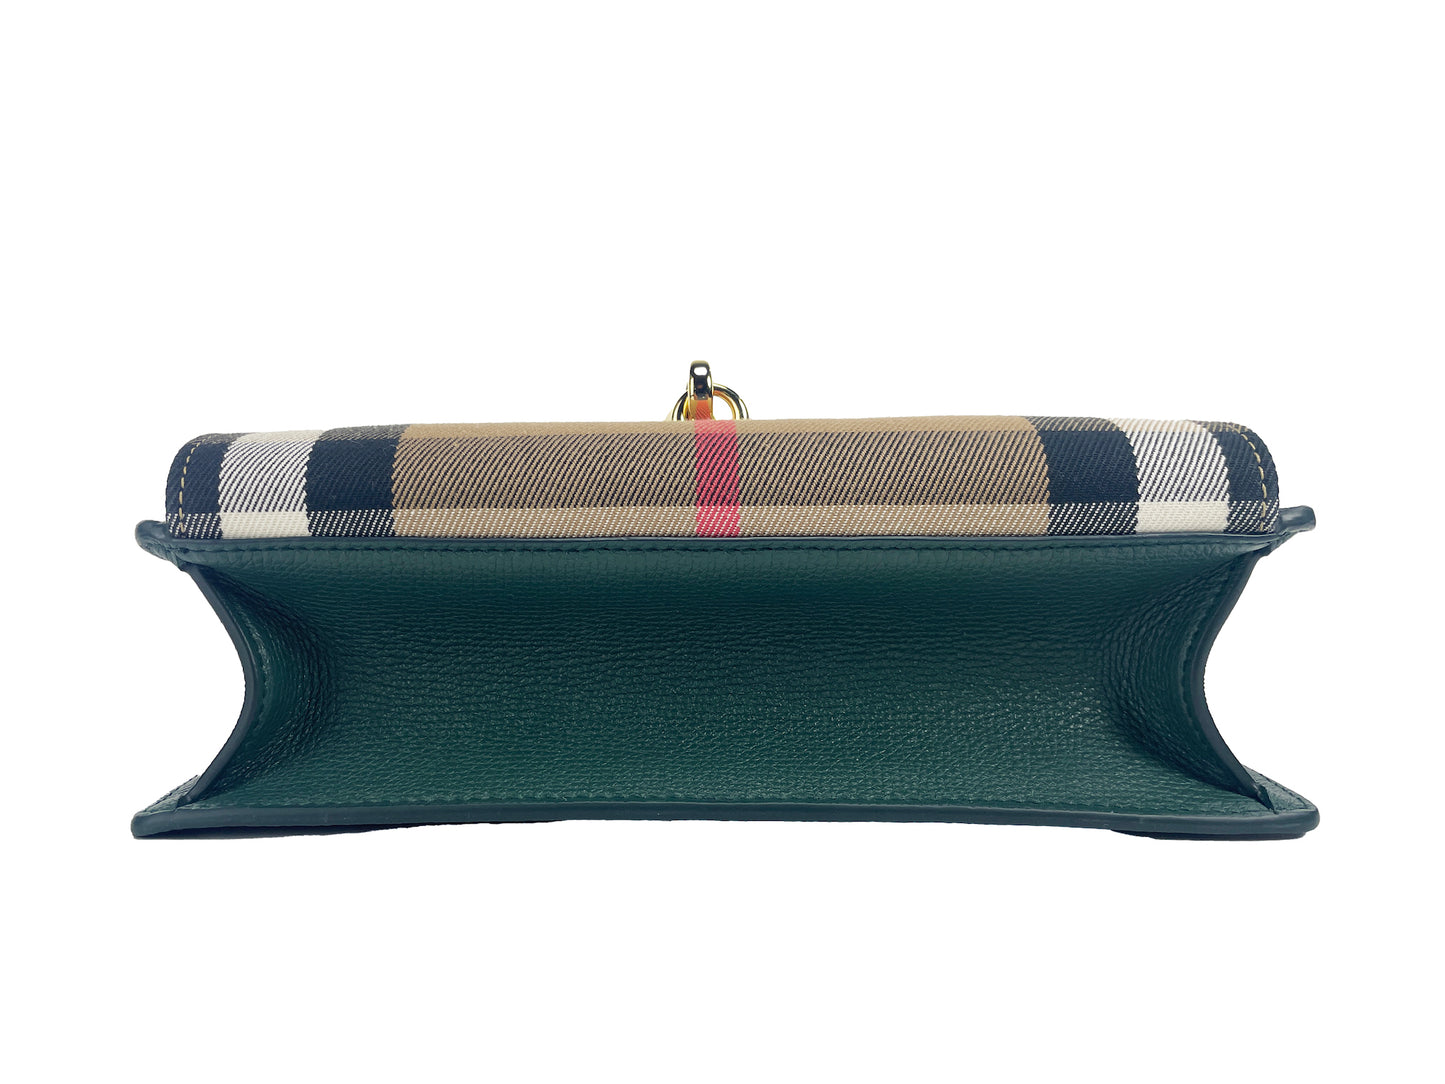 حقيبة بربري ماكين الصغيرة المصنوعة من الجلد بنقشة المربعات الخضراء الكلاسيكية